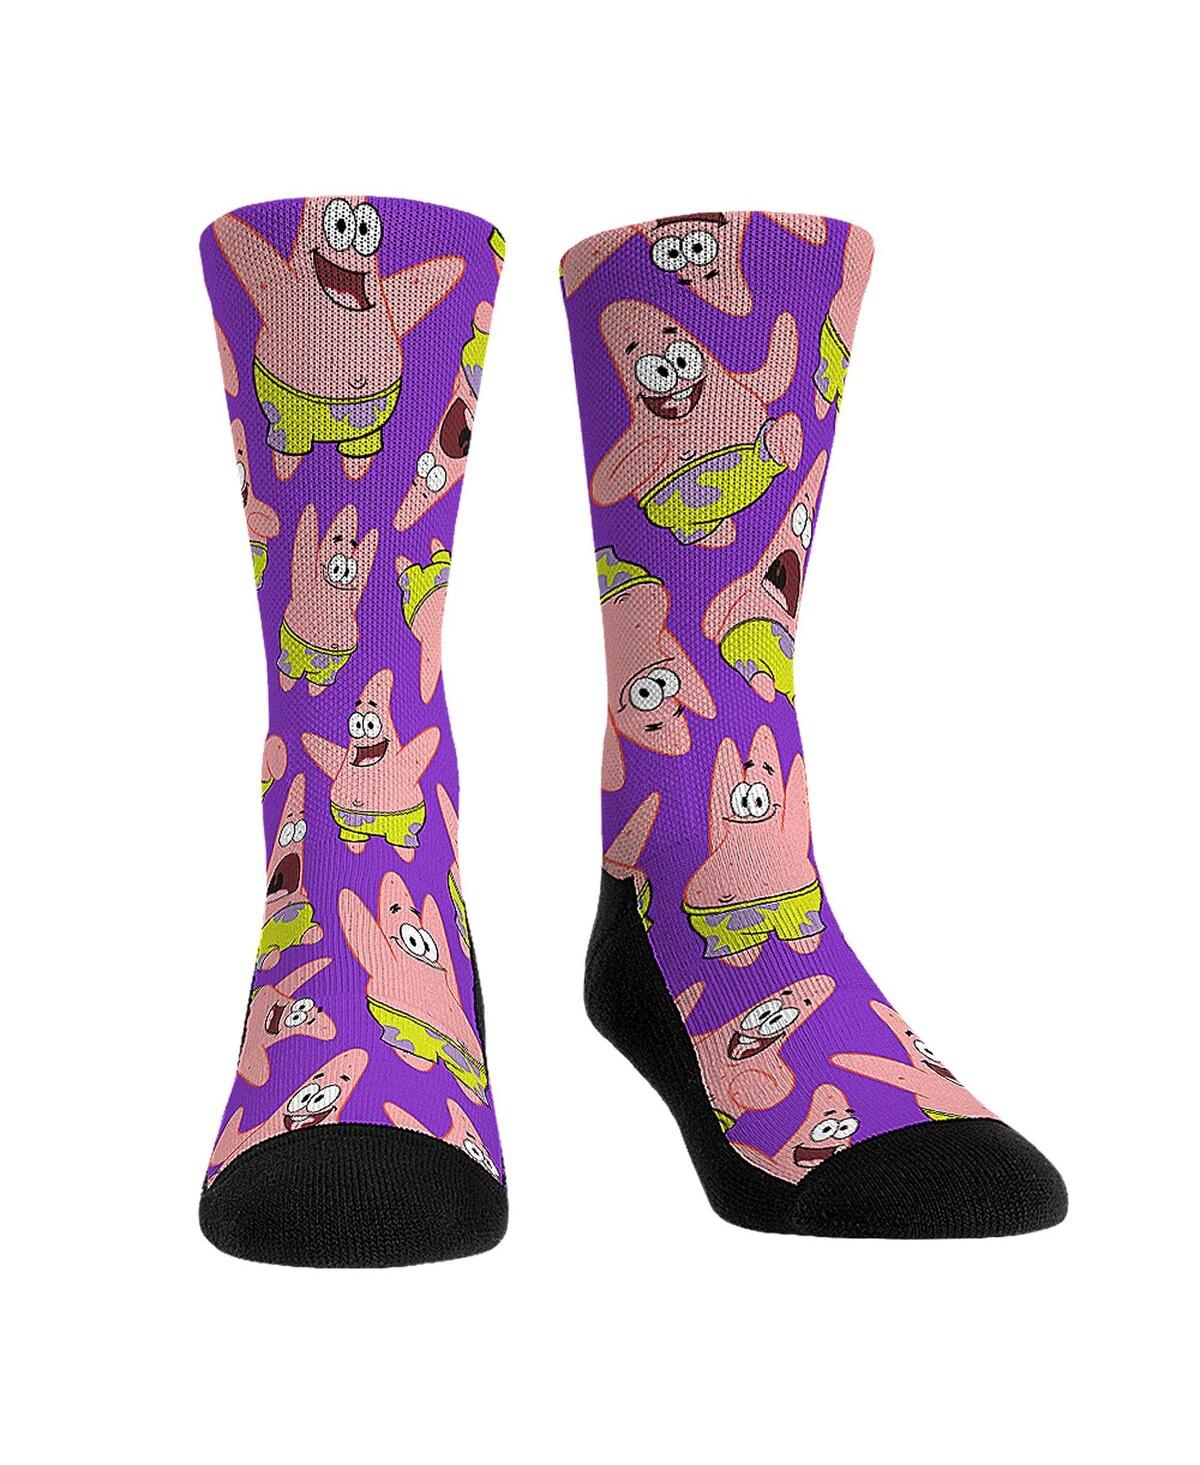 Shop Rock 'em Men's And Women's  Socks Spongebob Square Pants Patrick All Over Print Crew Socks In Multi